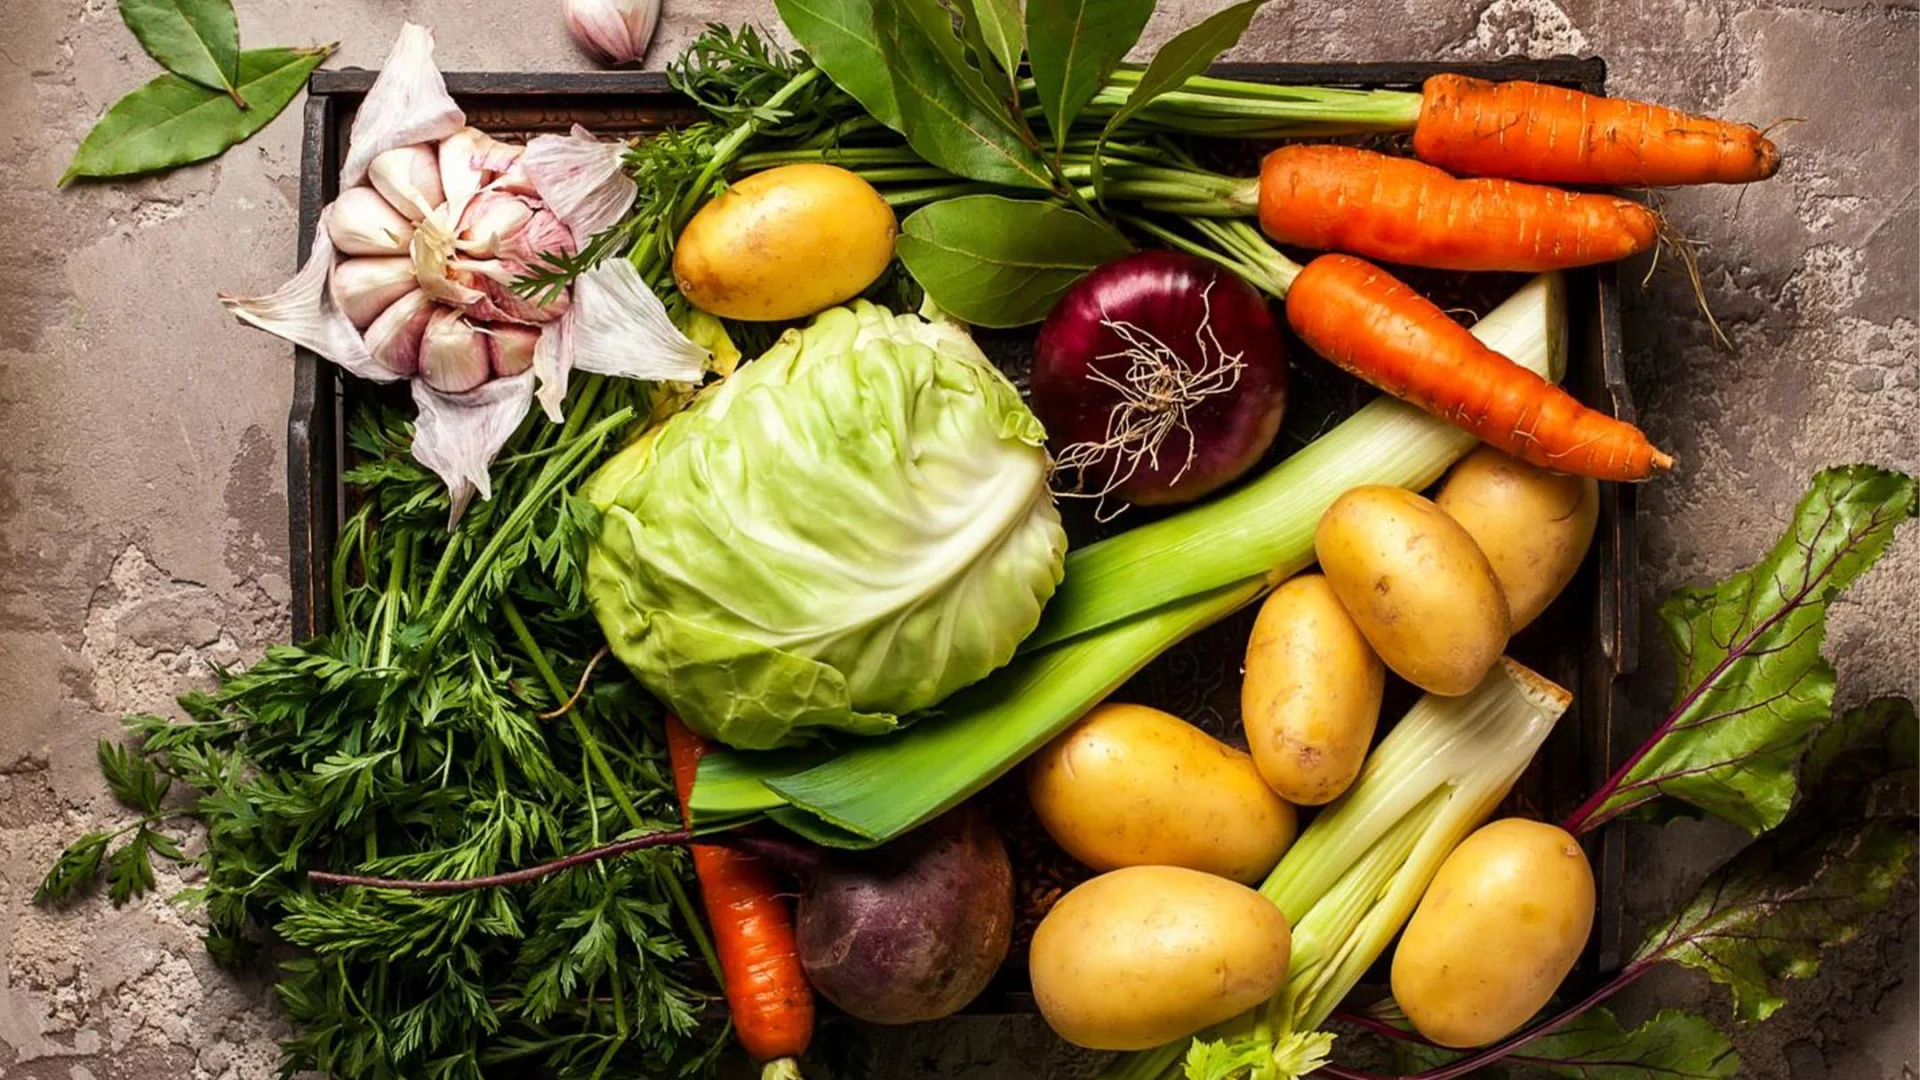 Verdure fresche come patate, carote, cavoli, erbe aromatiche e aglio